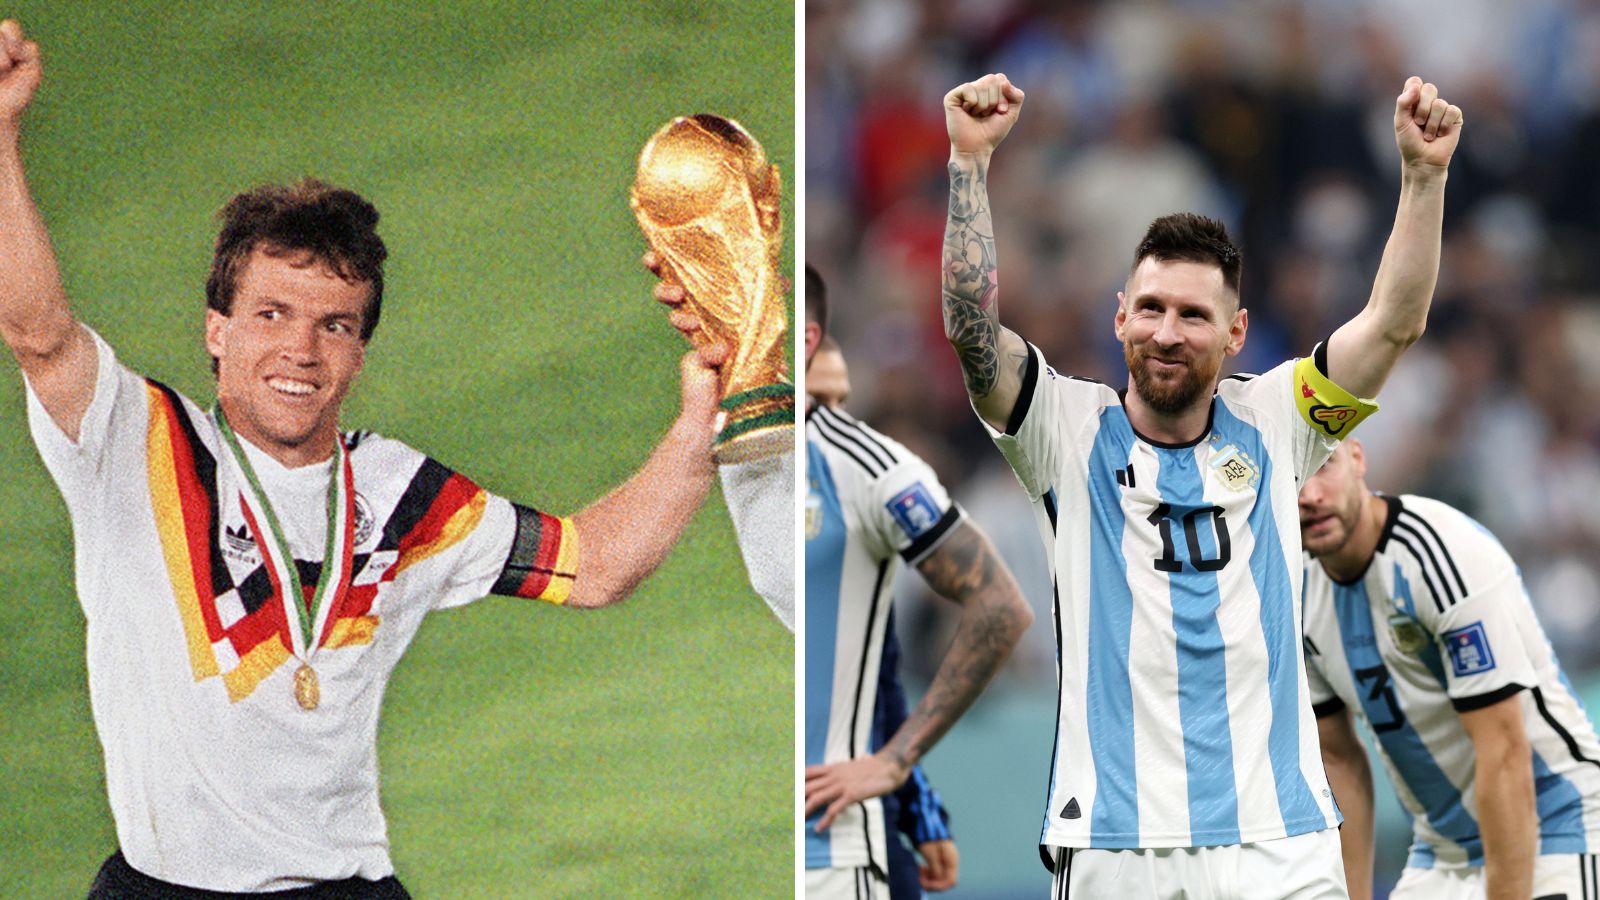 Messi iguala un récord histórico de Matthäus y lo superaría en la final. Fotos: Getty